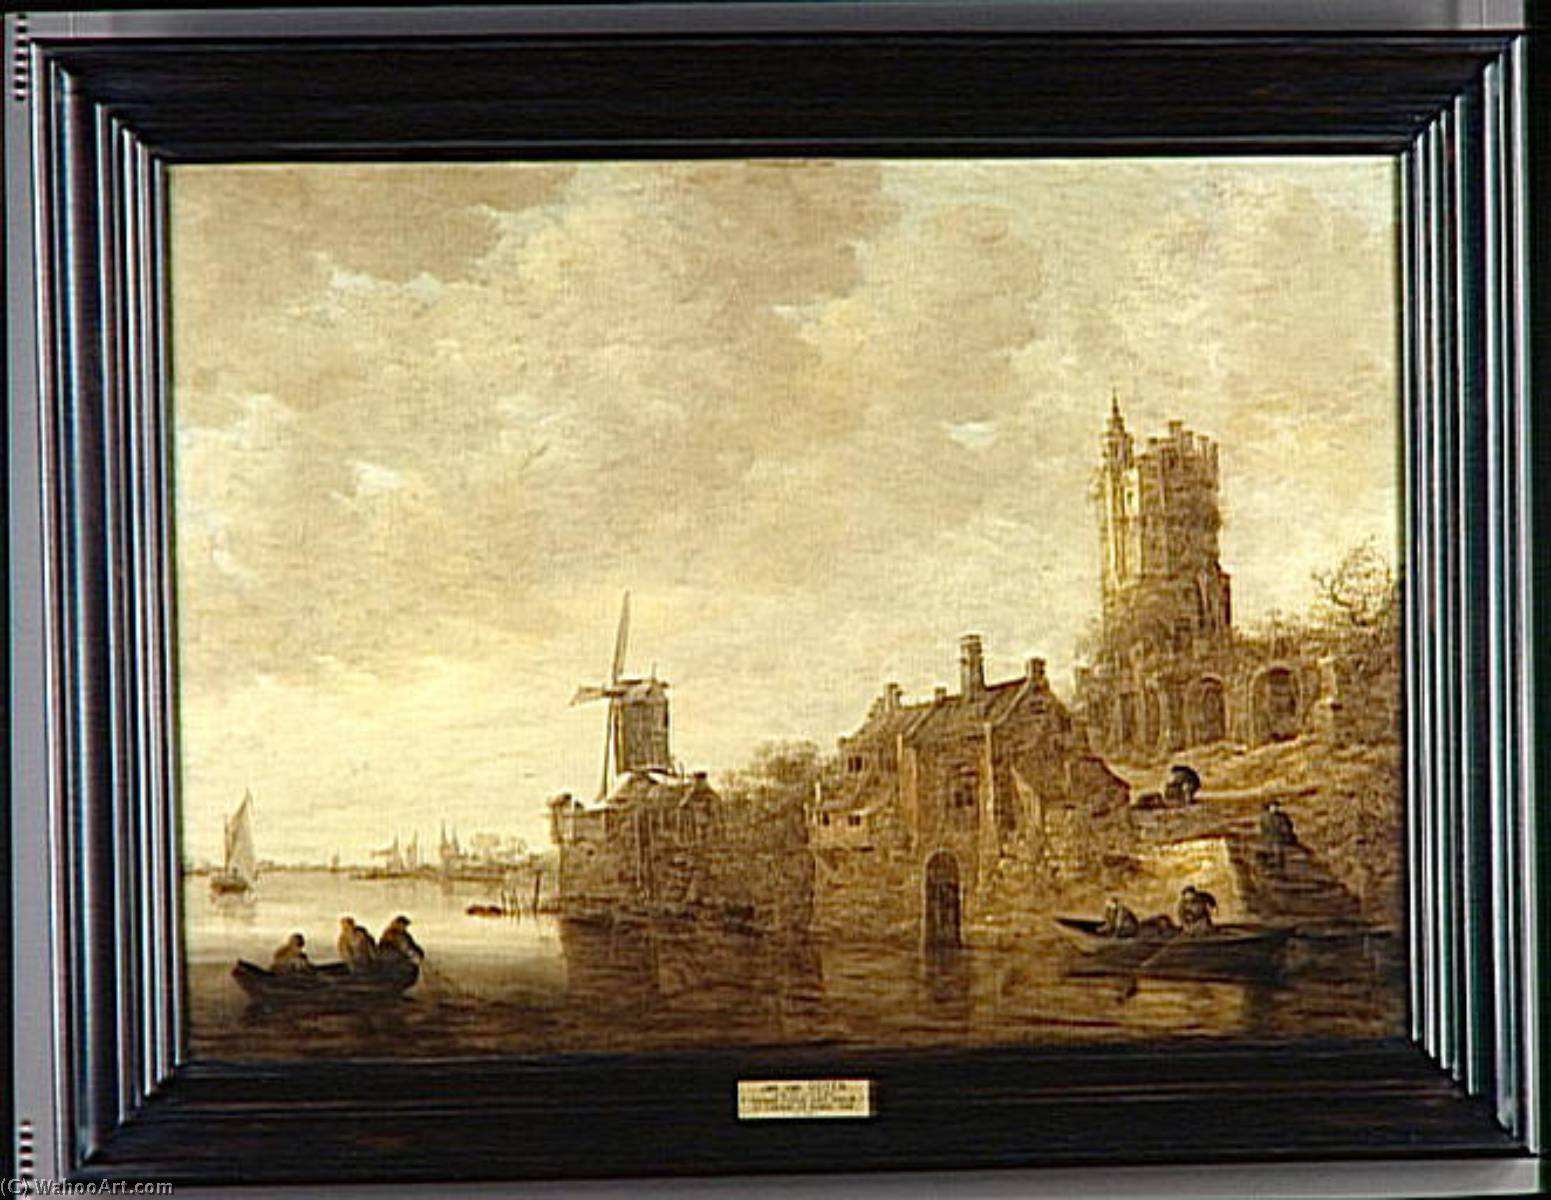 WikiOO.org - Encyclopedia of Fine Arts - Maleri, Artwork Jan Van Goyen - PAYSAGE FLUVIAL AVEC MOULIN ET CHATEAU EN RUINES